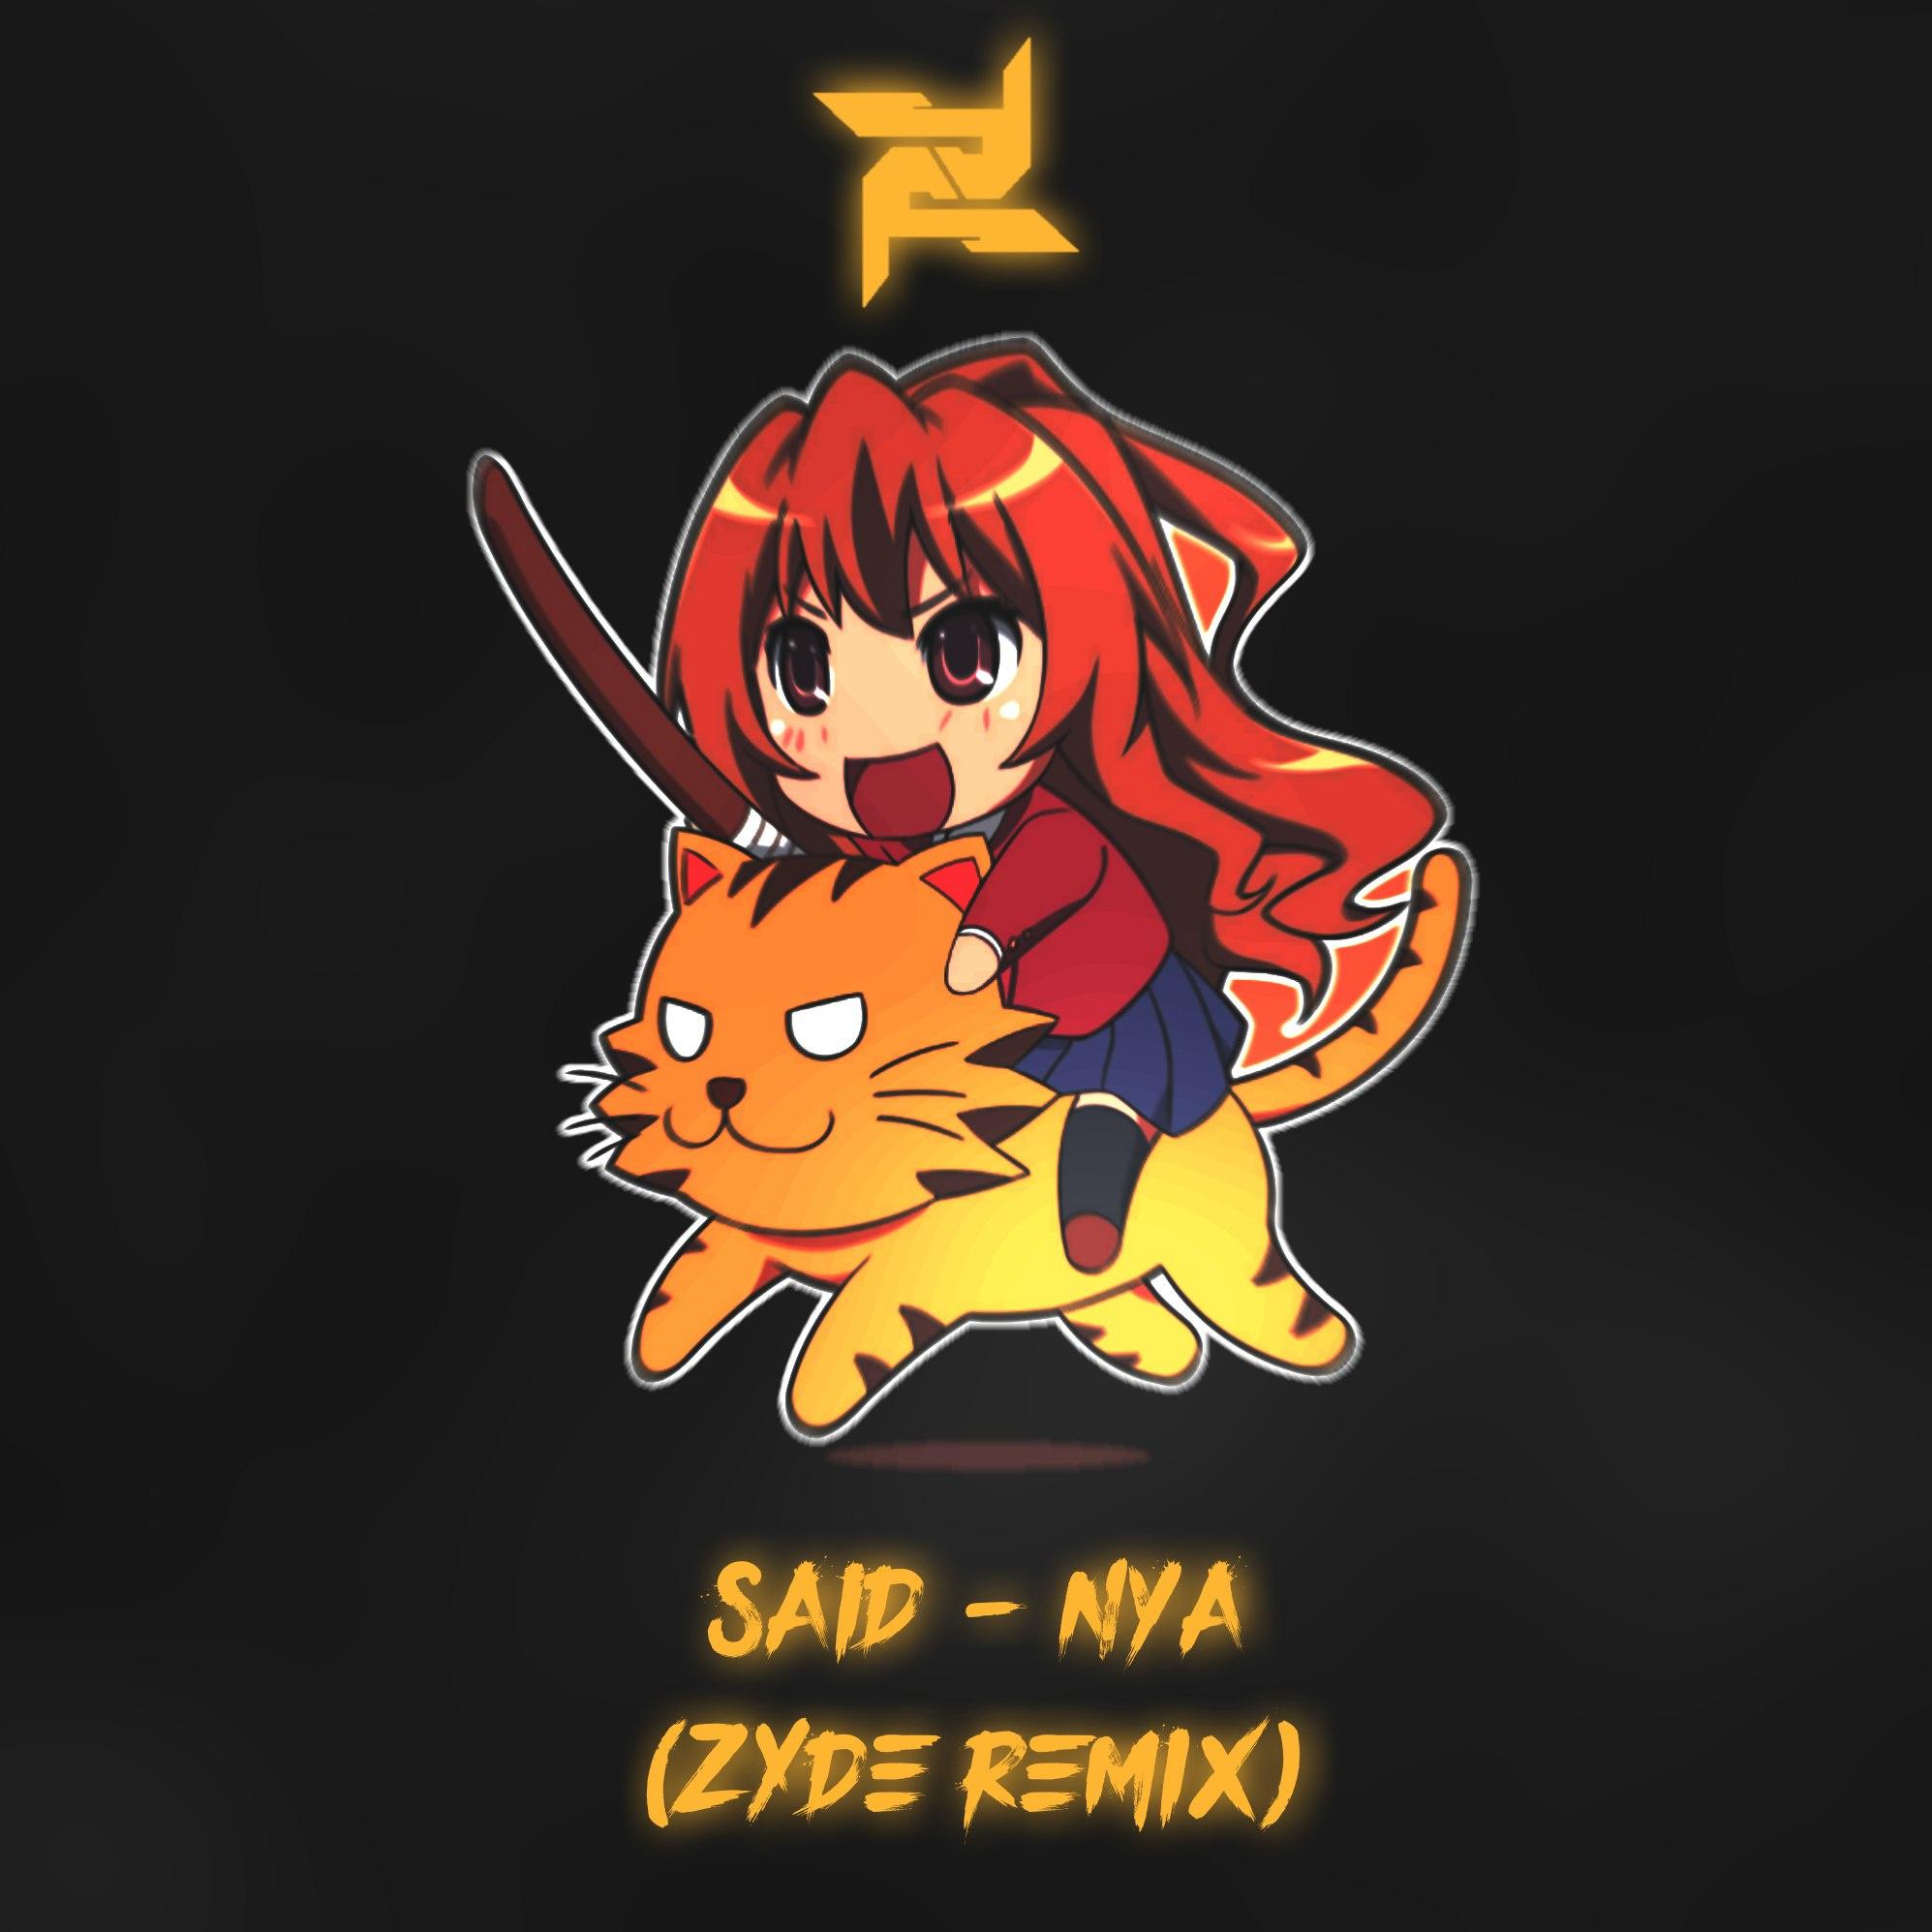 Nya (Zyde Remix)